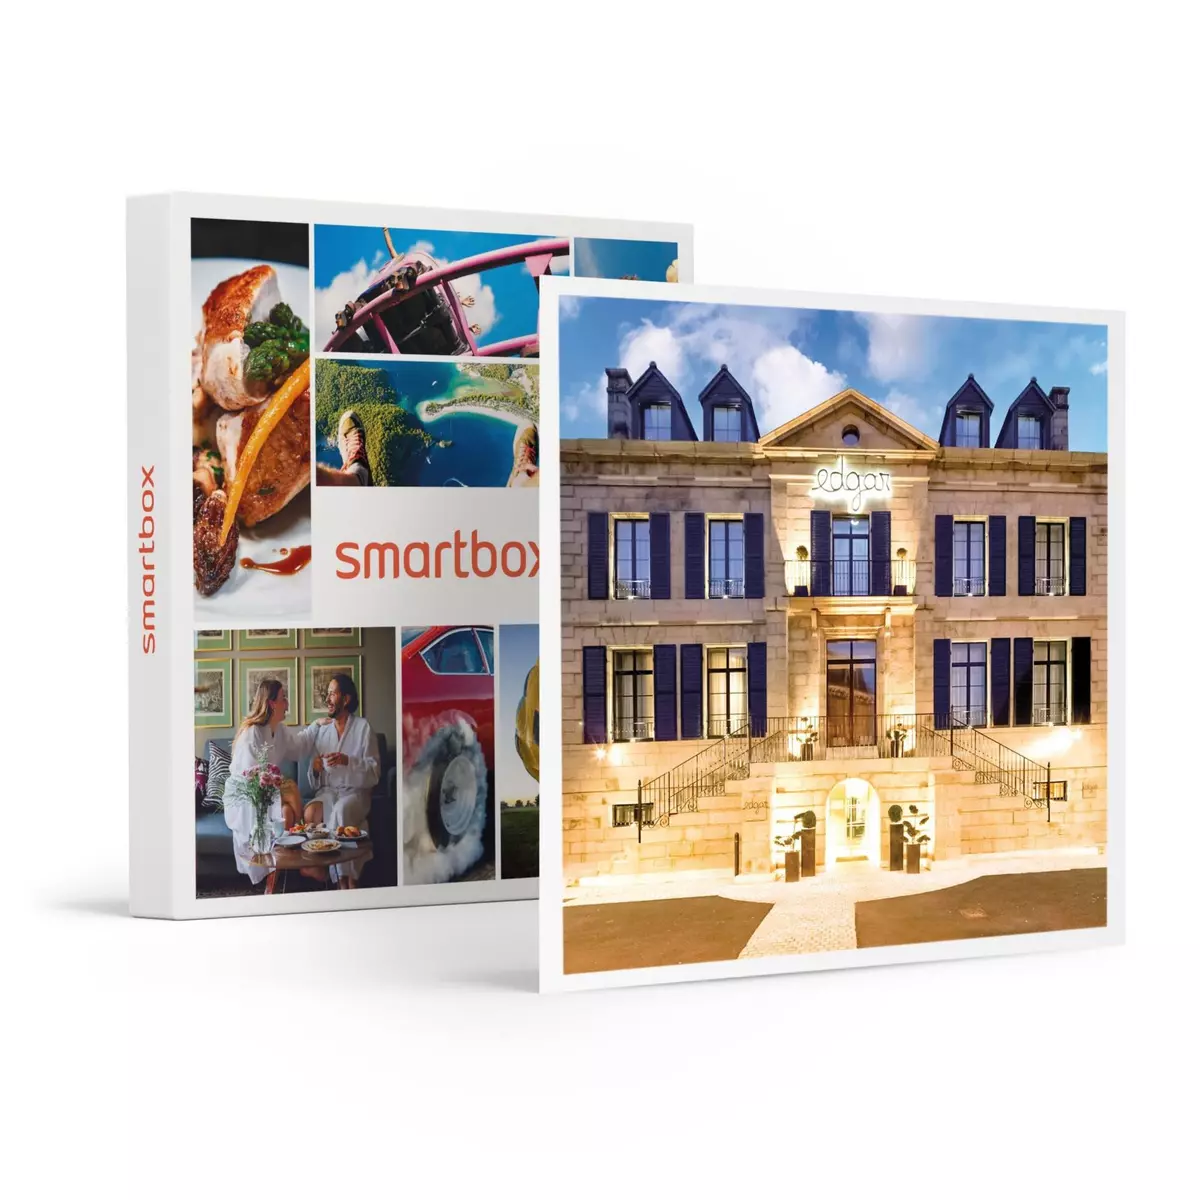 Smartbox 3 jours de détente à Saint-Brieuc en hôtel 4* avec accès à l'espace bien-être - Coffret Cadeau Séjour